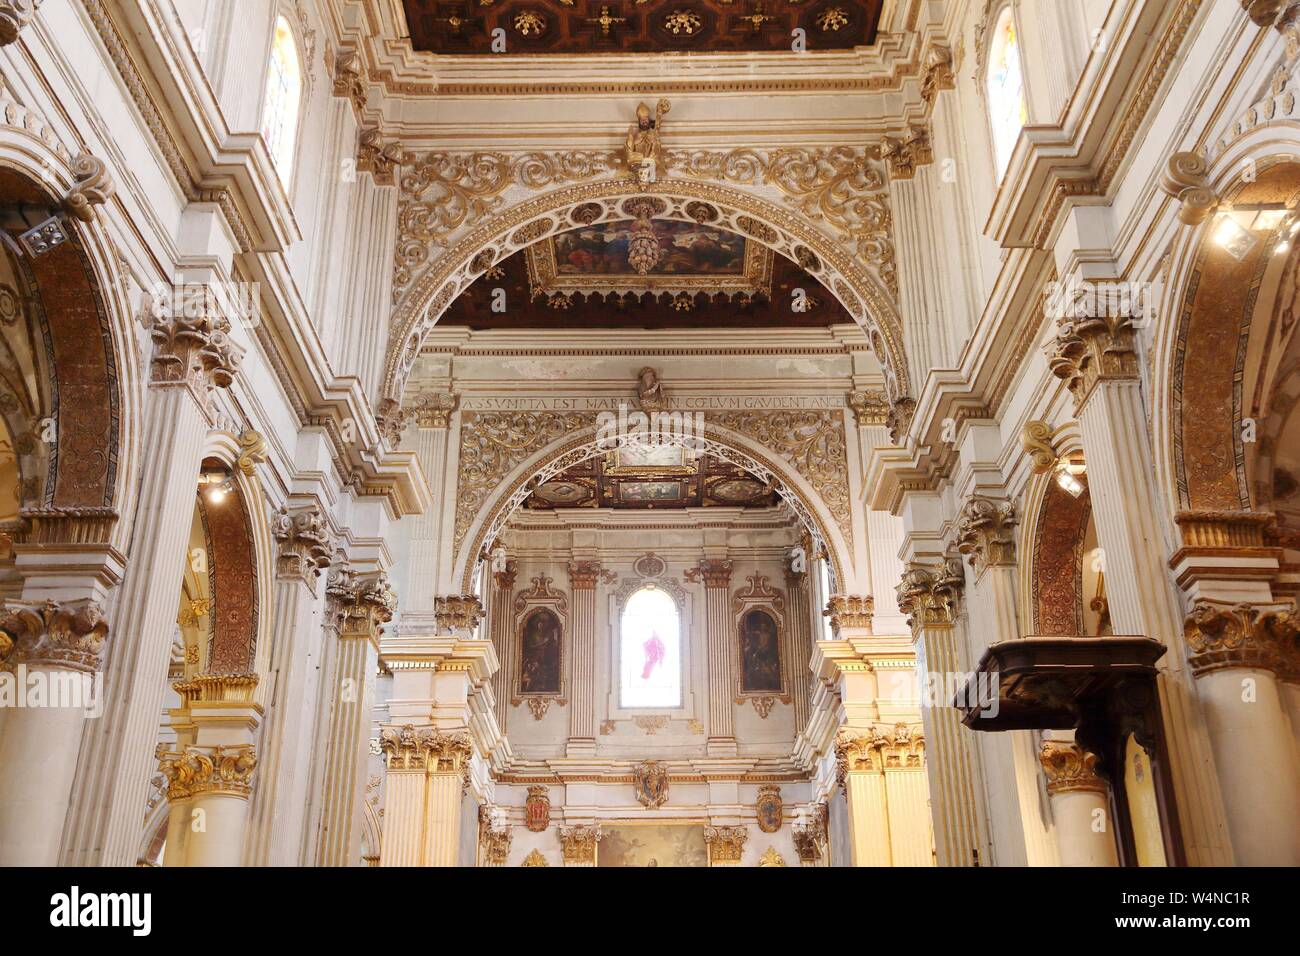 LECCE, Italia - Giugno 1, 2017: Interno della cattedrale in Lecce, Italia. Il barocco landmark è dedicata all'Assunzione della Vergine Maria. Foto Stock